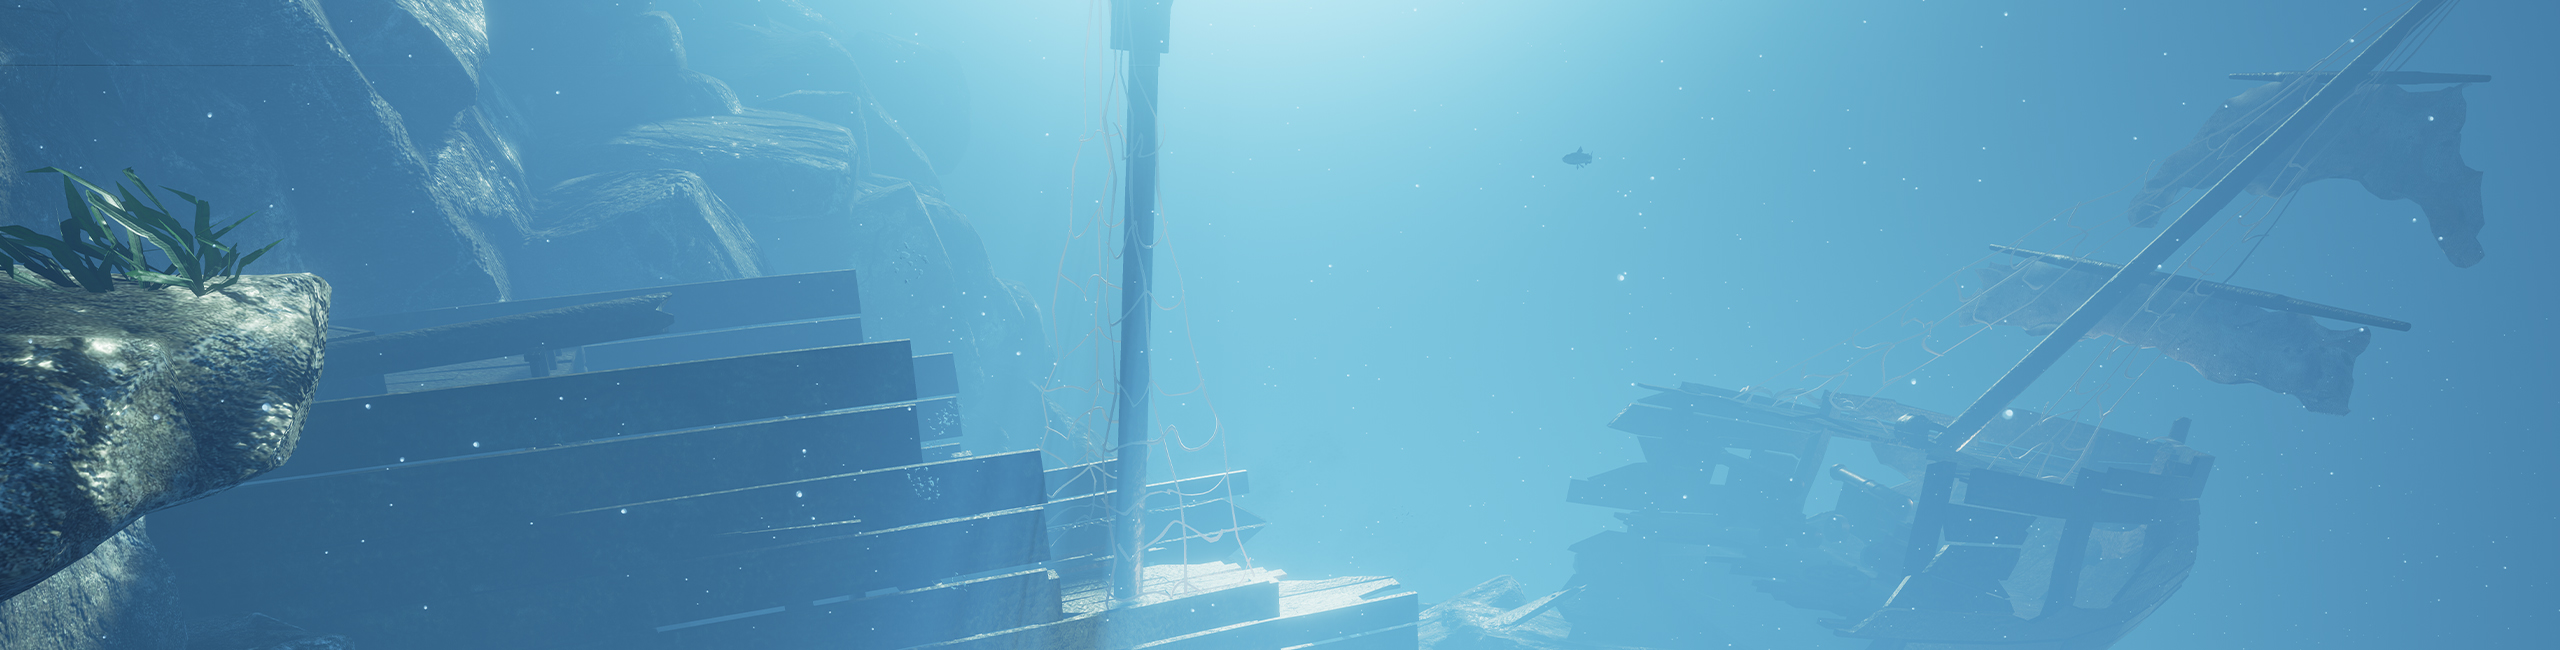 Visualisierte Unterwasserlandschaft mit versunkenen Schiff